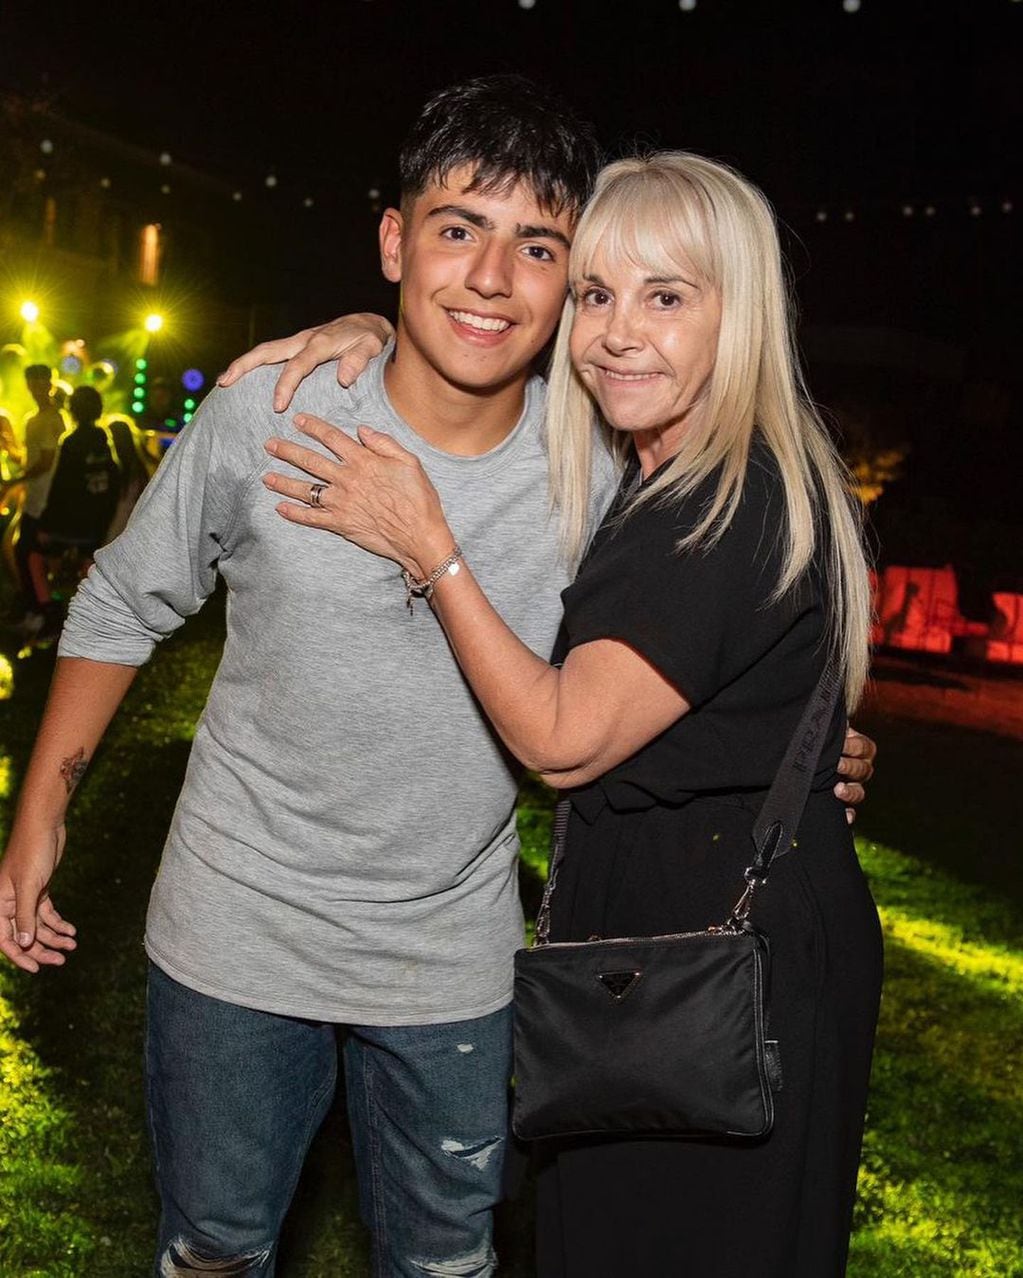 Benjamín Agüero, el hijo del Kun Agüero y de Gianinna Maradona. Gentileza Instagram.